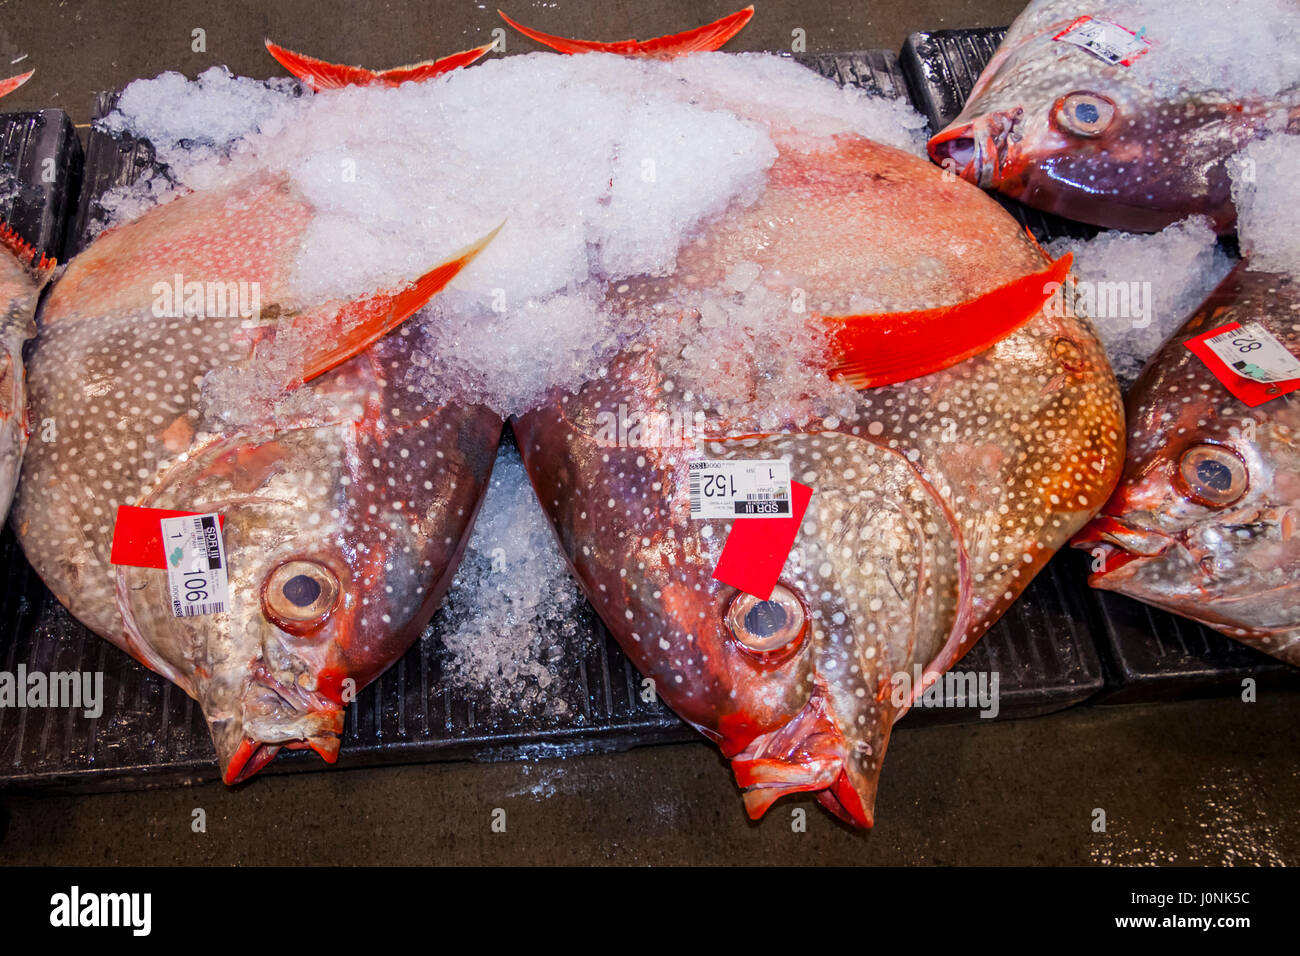 Moonfish Lampris à poissons, guttatus, New York, USA Banque D'Images